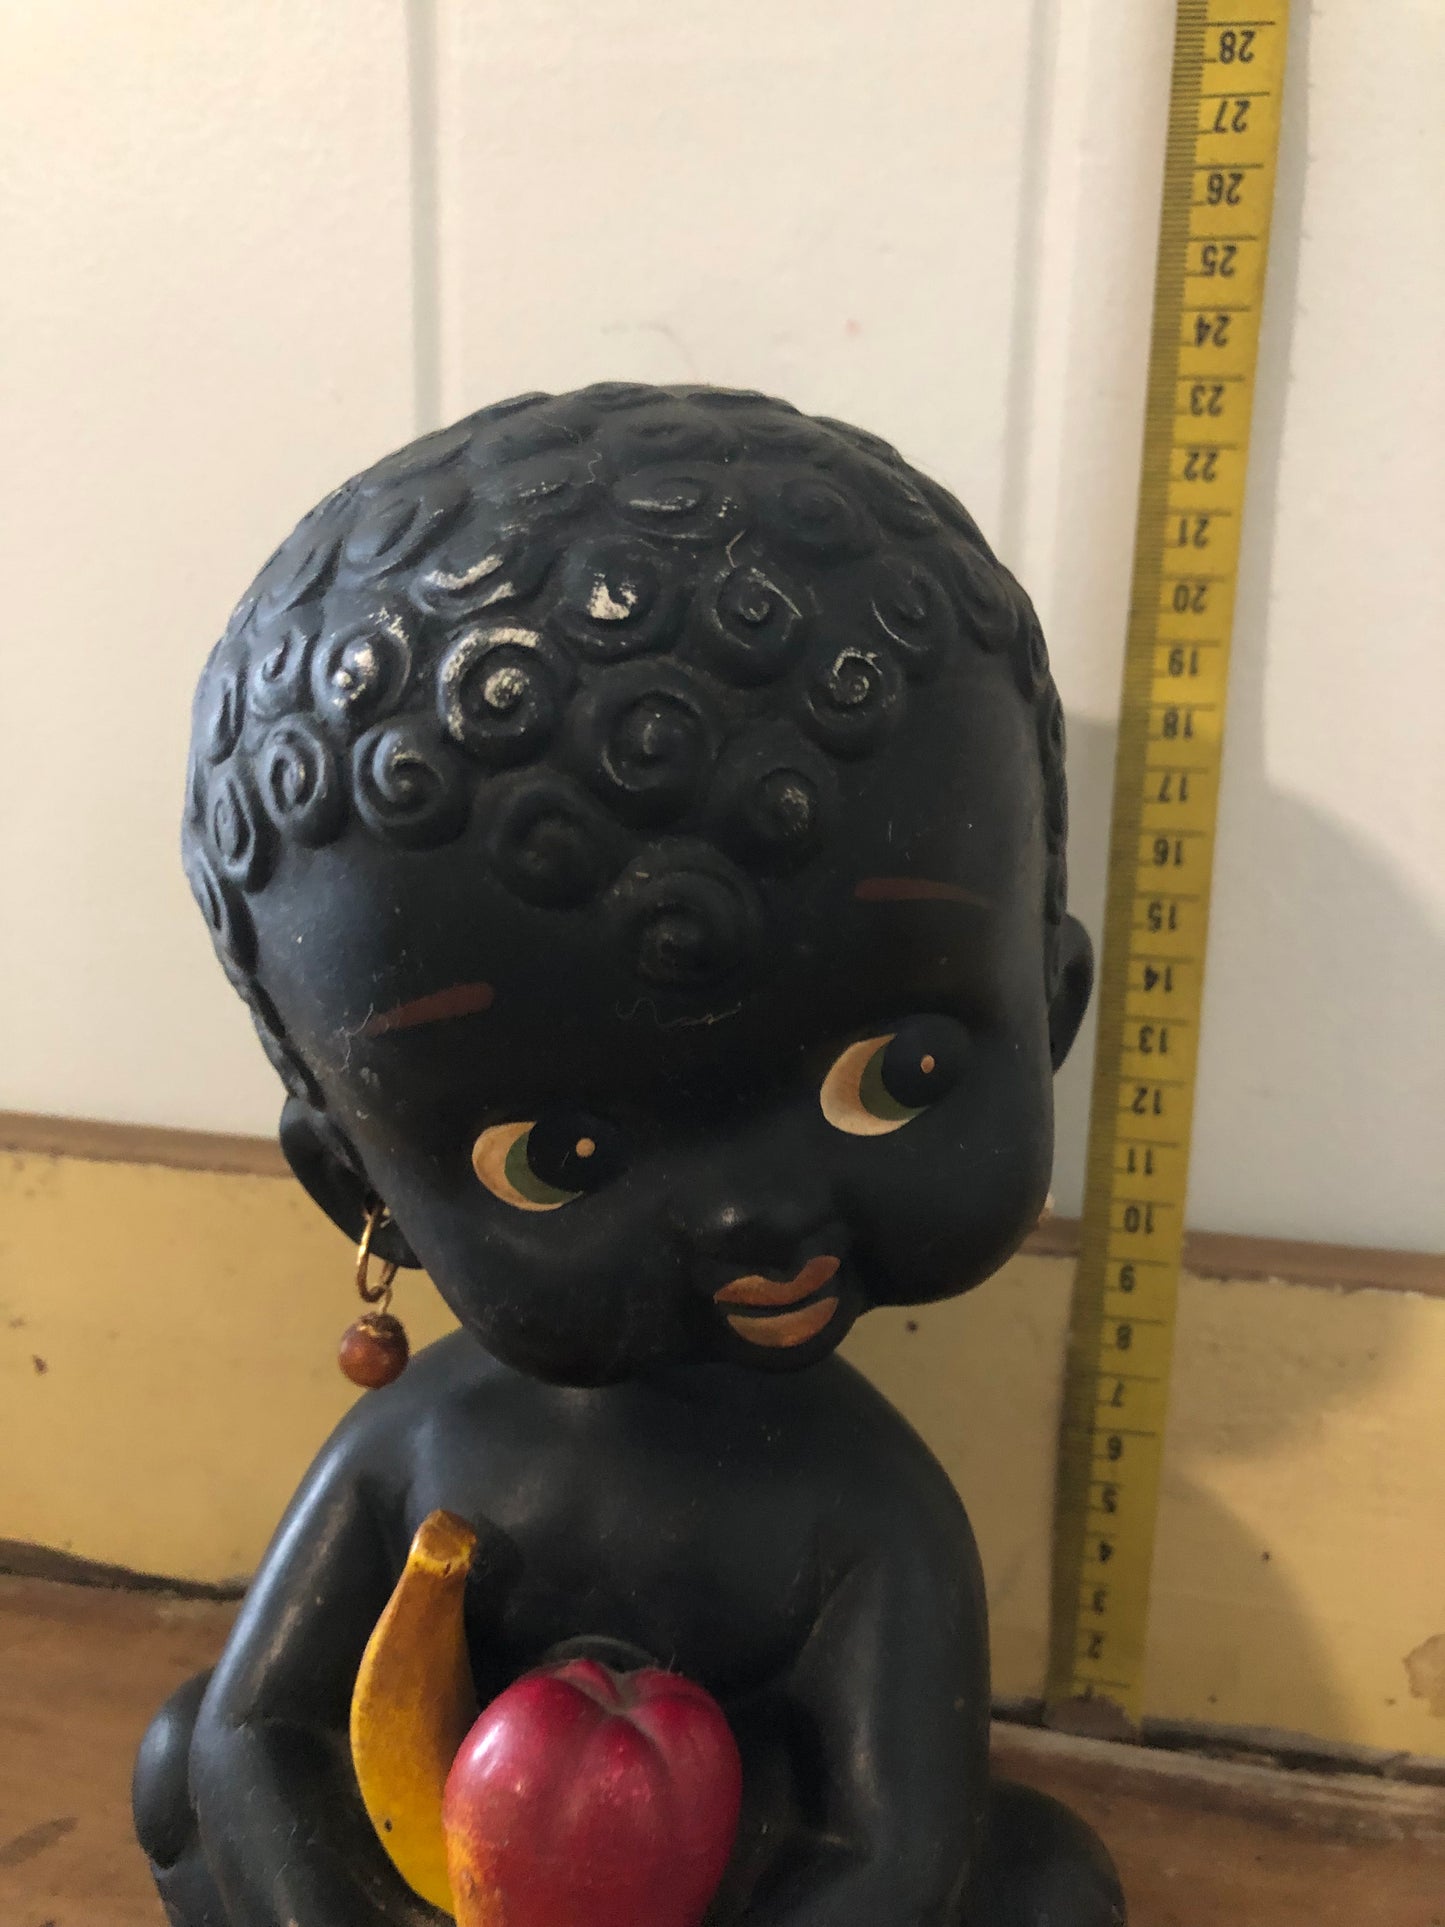 Bobble head figurine large. Black